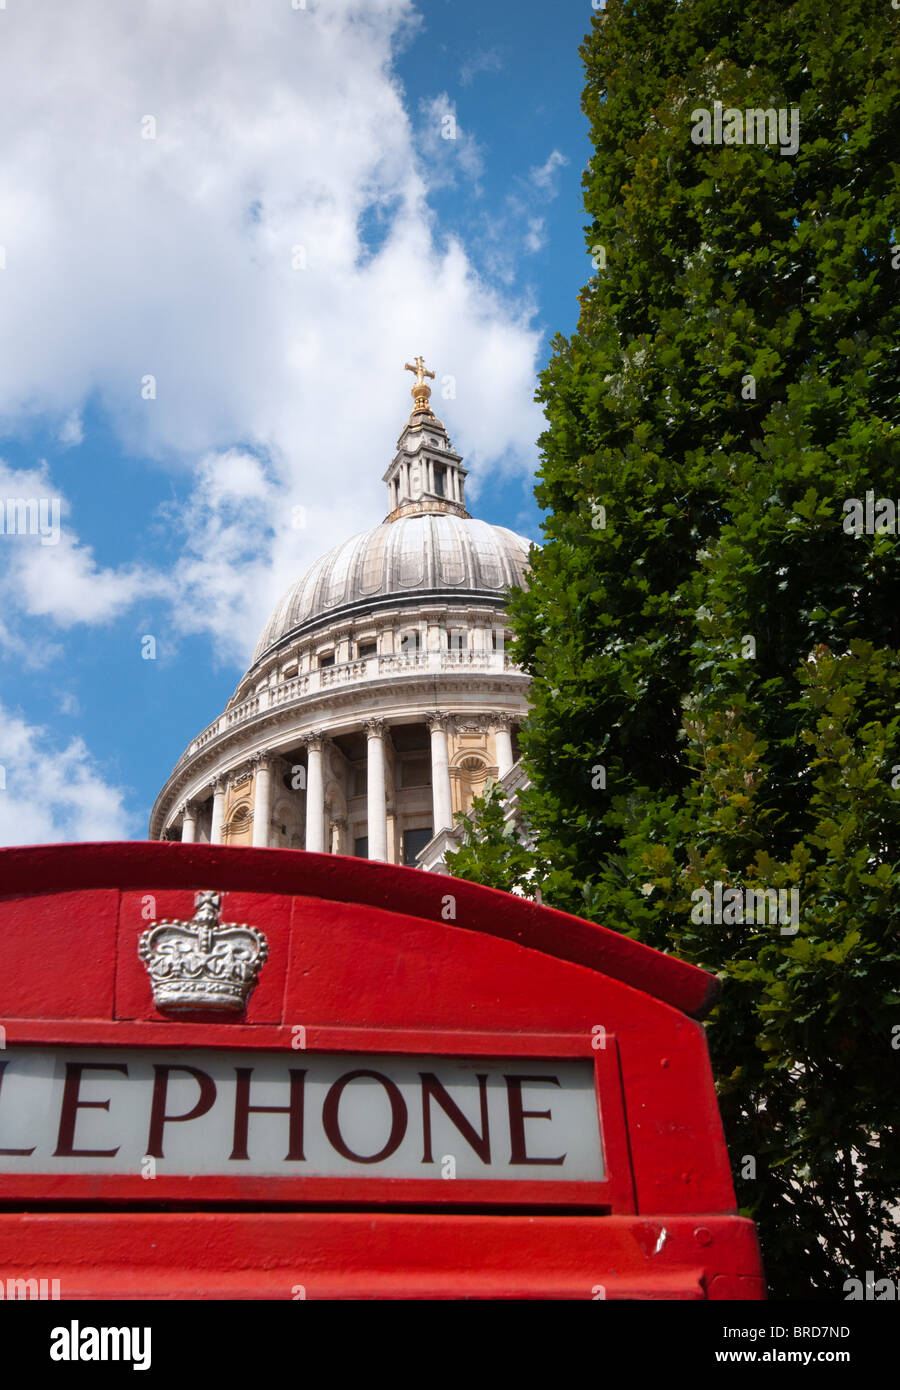 Un rouge London phone box vu dans l'avant-plan avec la Cathédrale St Paul à l'arrière. Banque D'Images